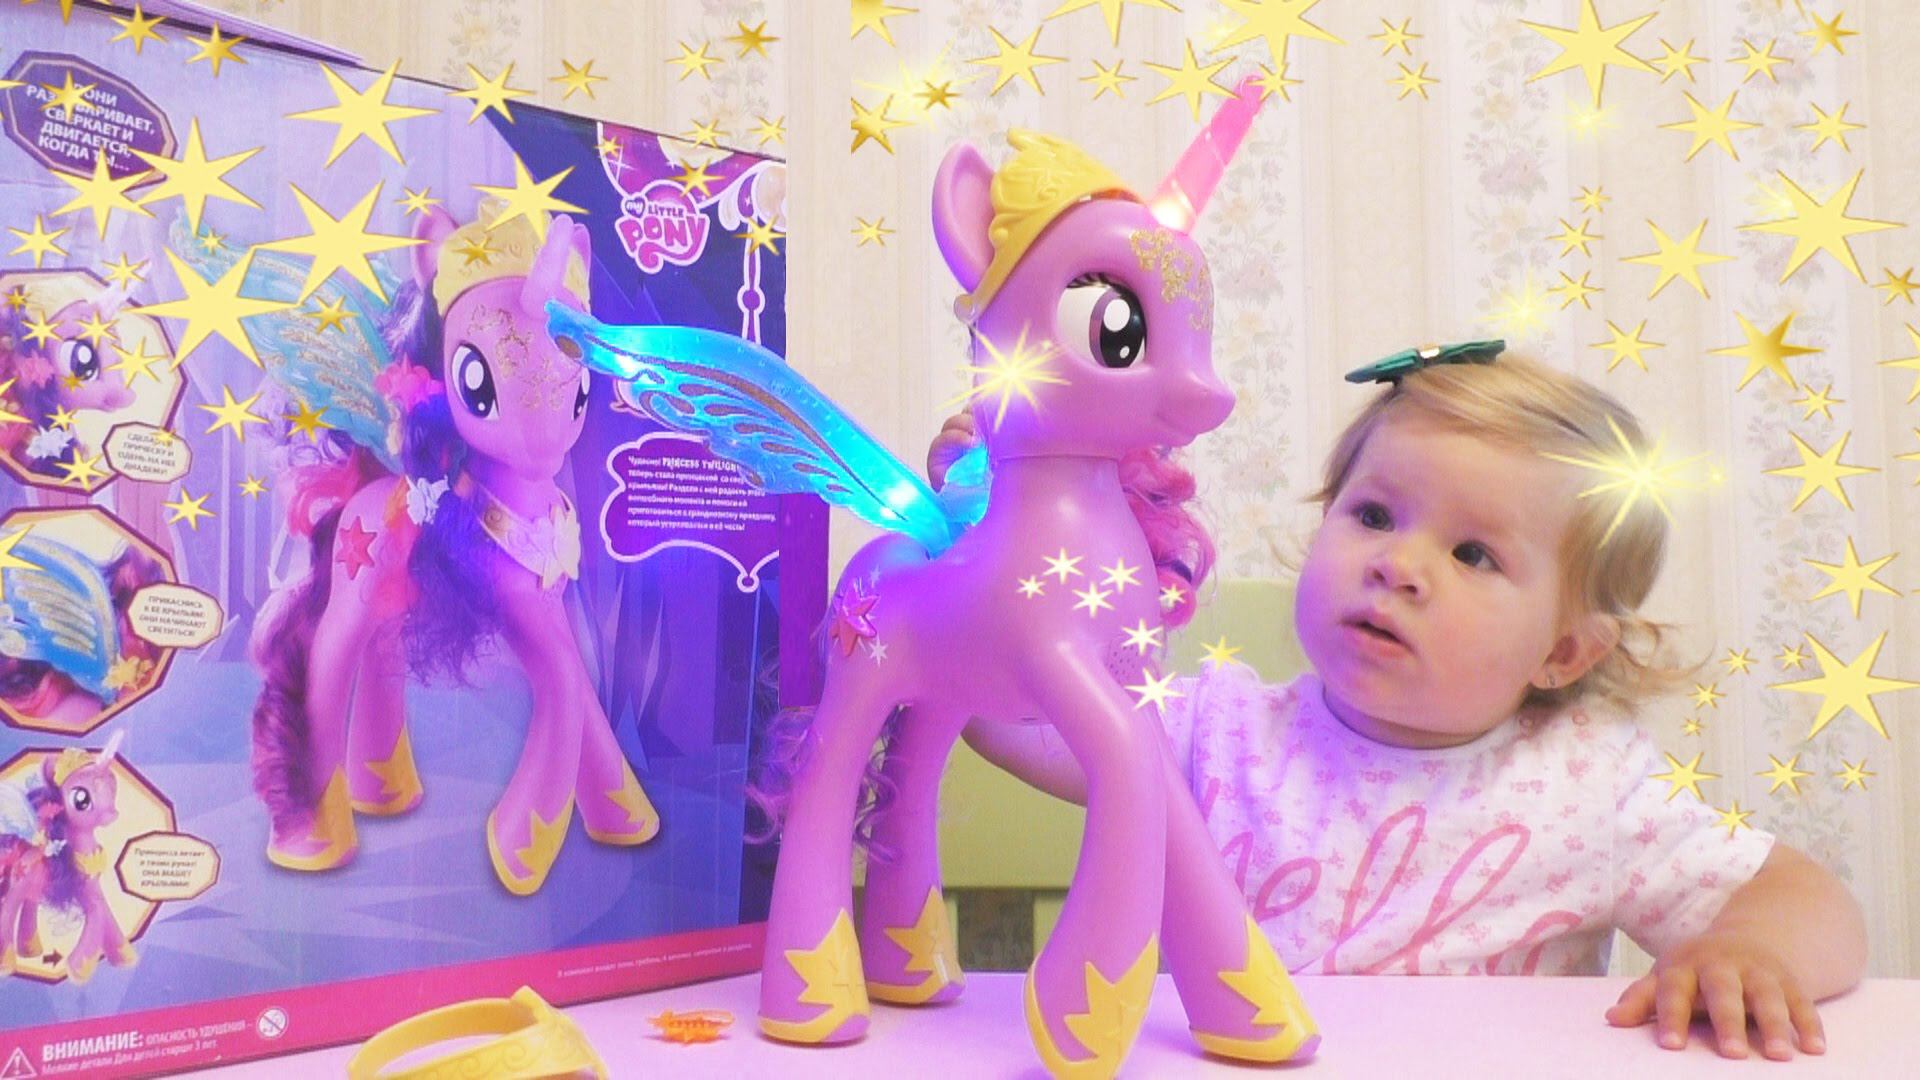 Открывай my little pony. Принцесса Твайлайт Спаркл игрушка интерактивная. Интерактивная игрушка my little Pony «Твайлайт Спаркл». Интерактивная пони принцесса Твайлайт Спаркл. Сюрприз игрушки пони Твайлайт Спаркл.